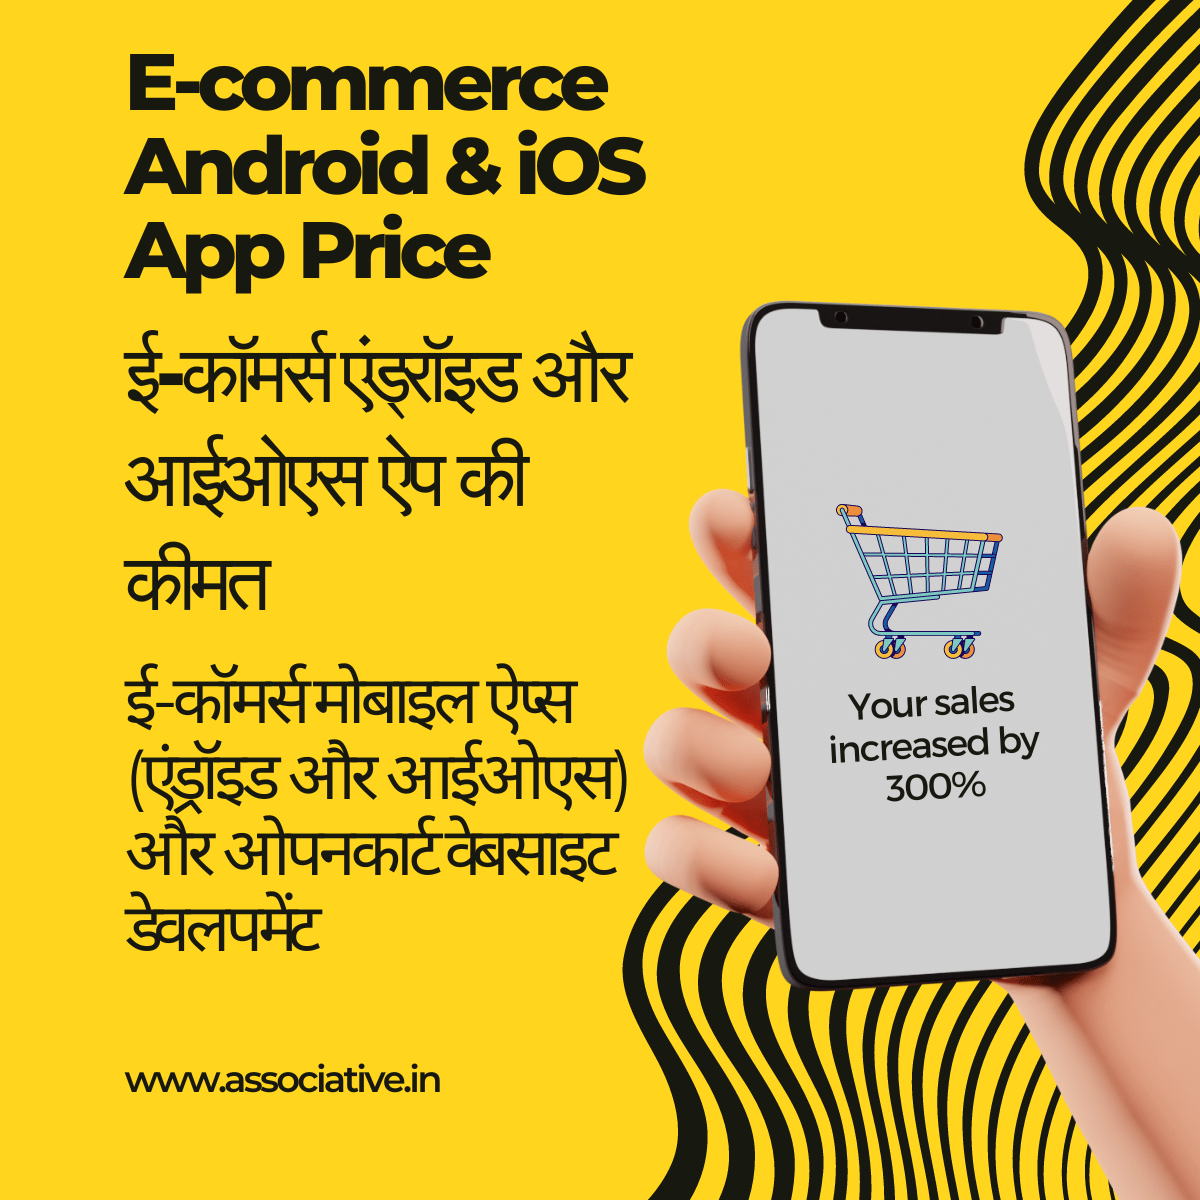 E-commerce Android & iOS App Price

ई-कॉमर्स एंड्रॉइड और आईओएस ऐप की कीमत